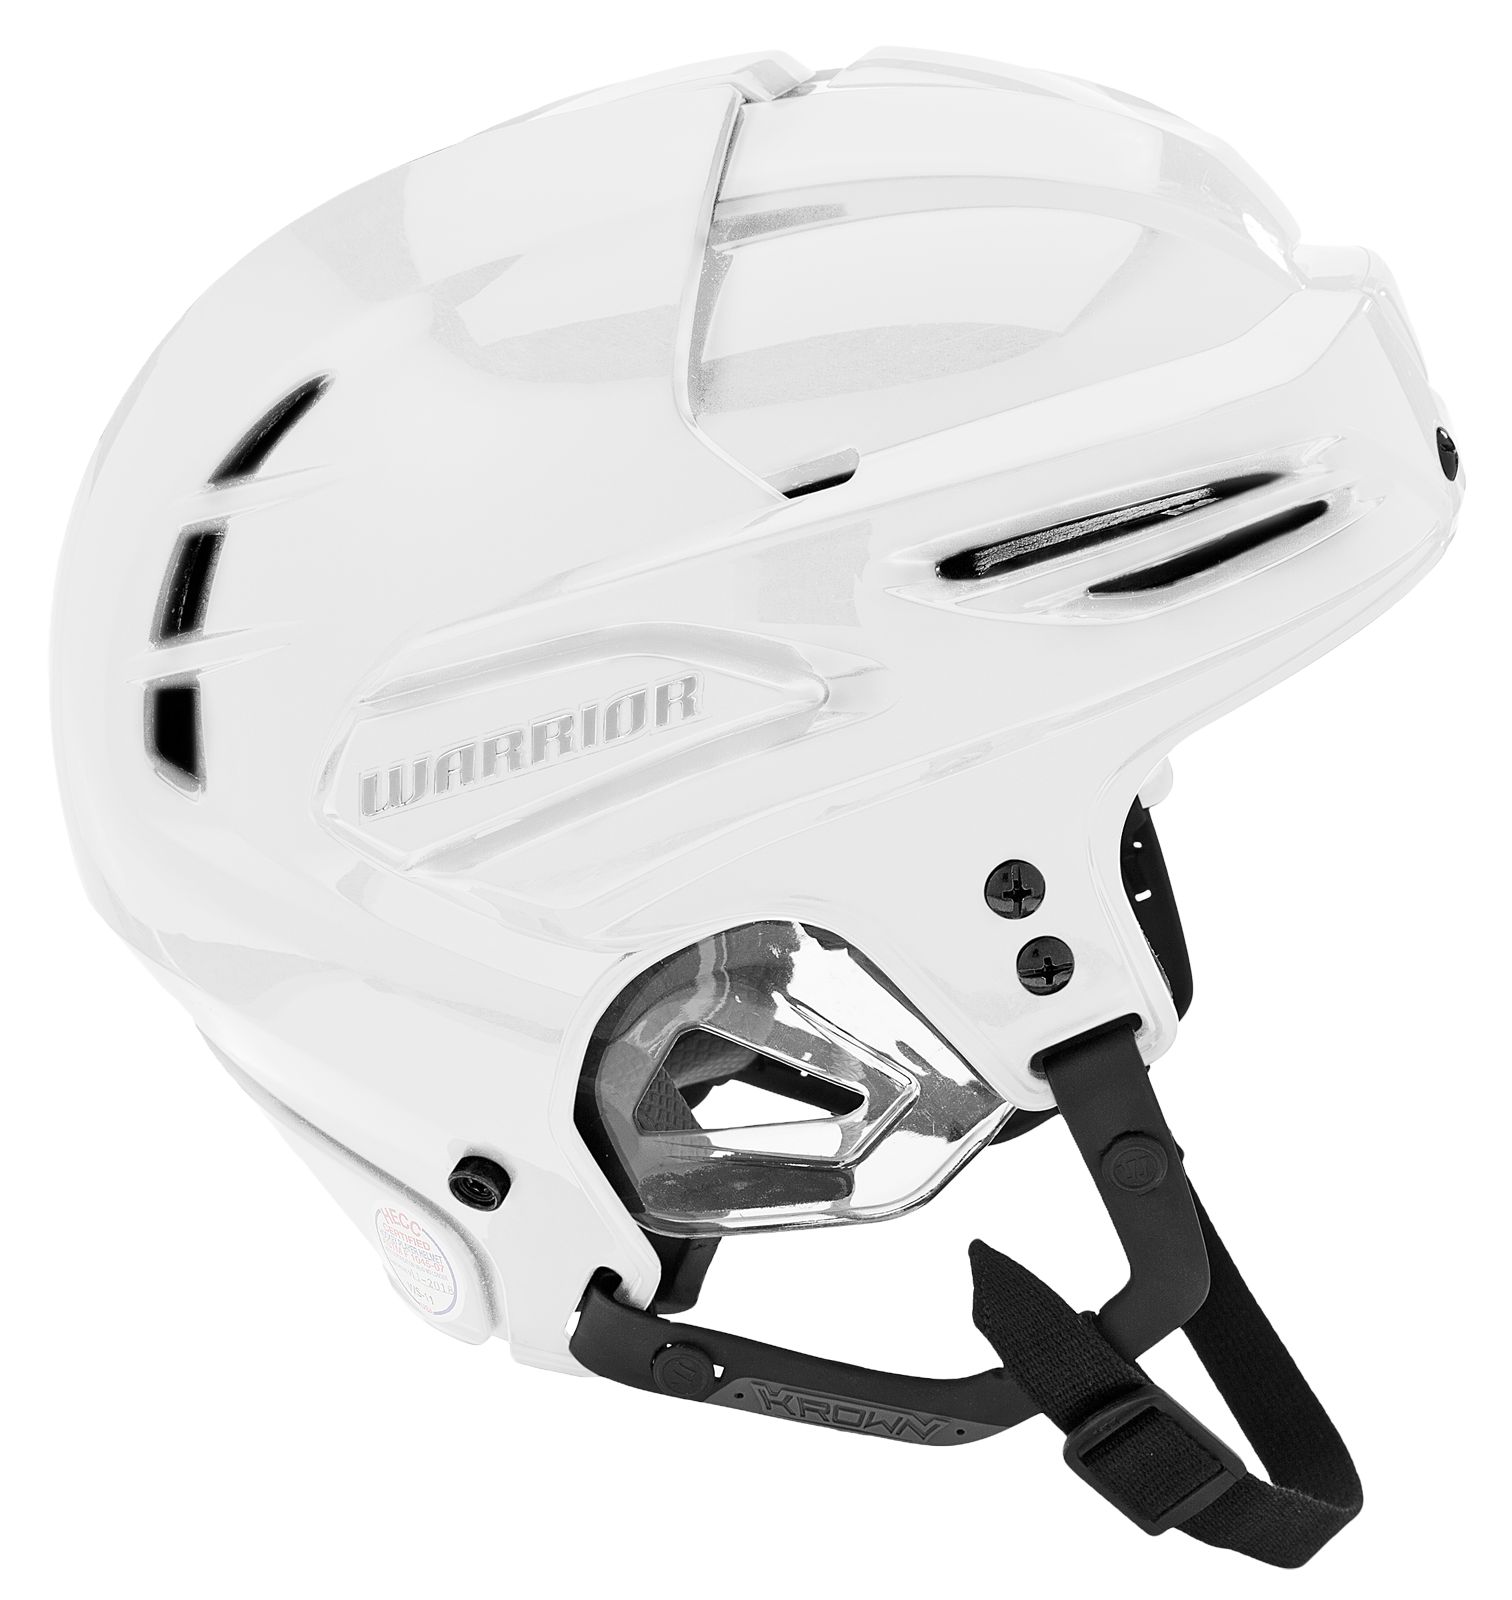 Krown 360 Helmet, White image number 1